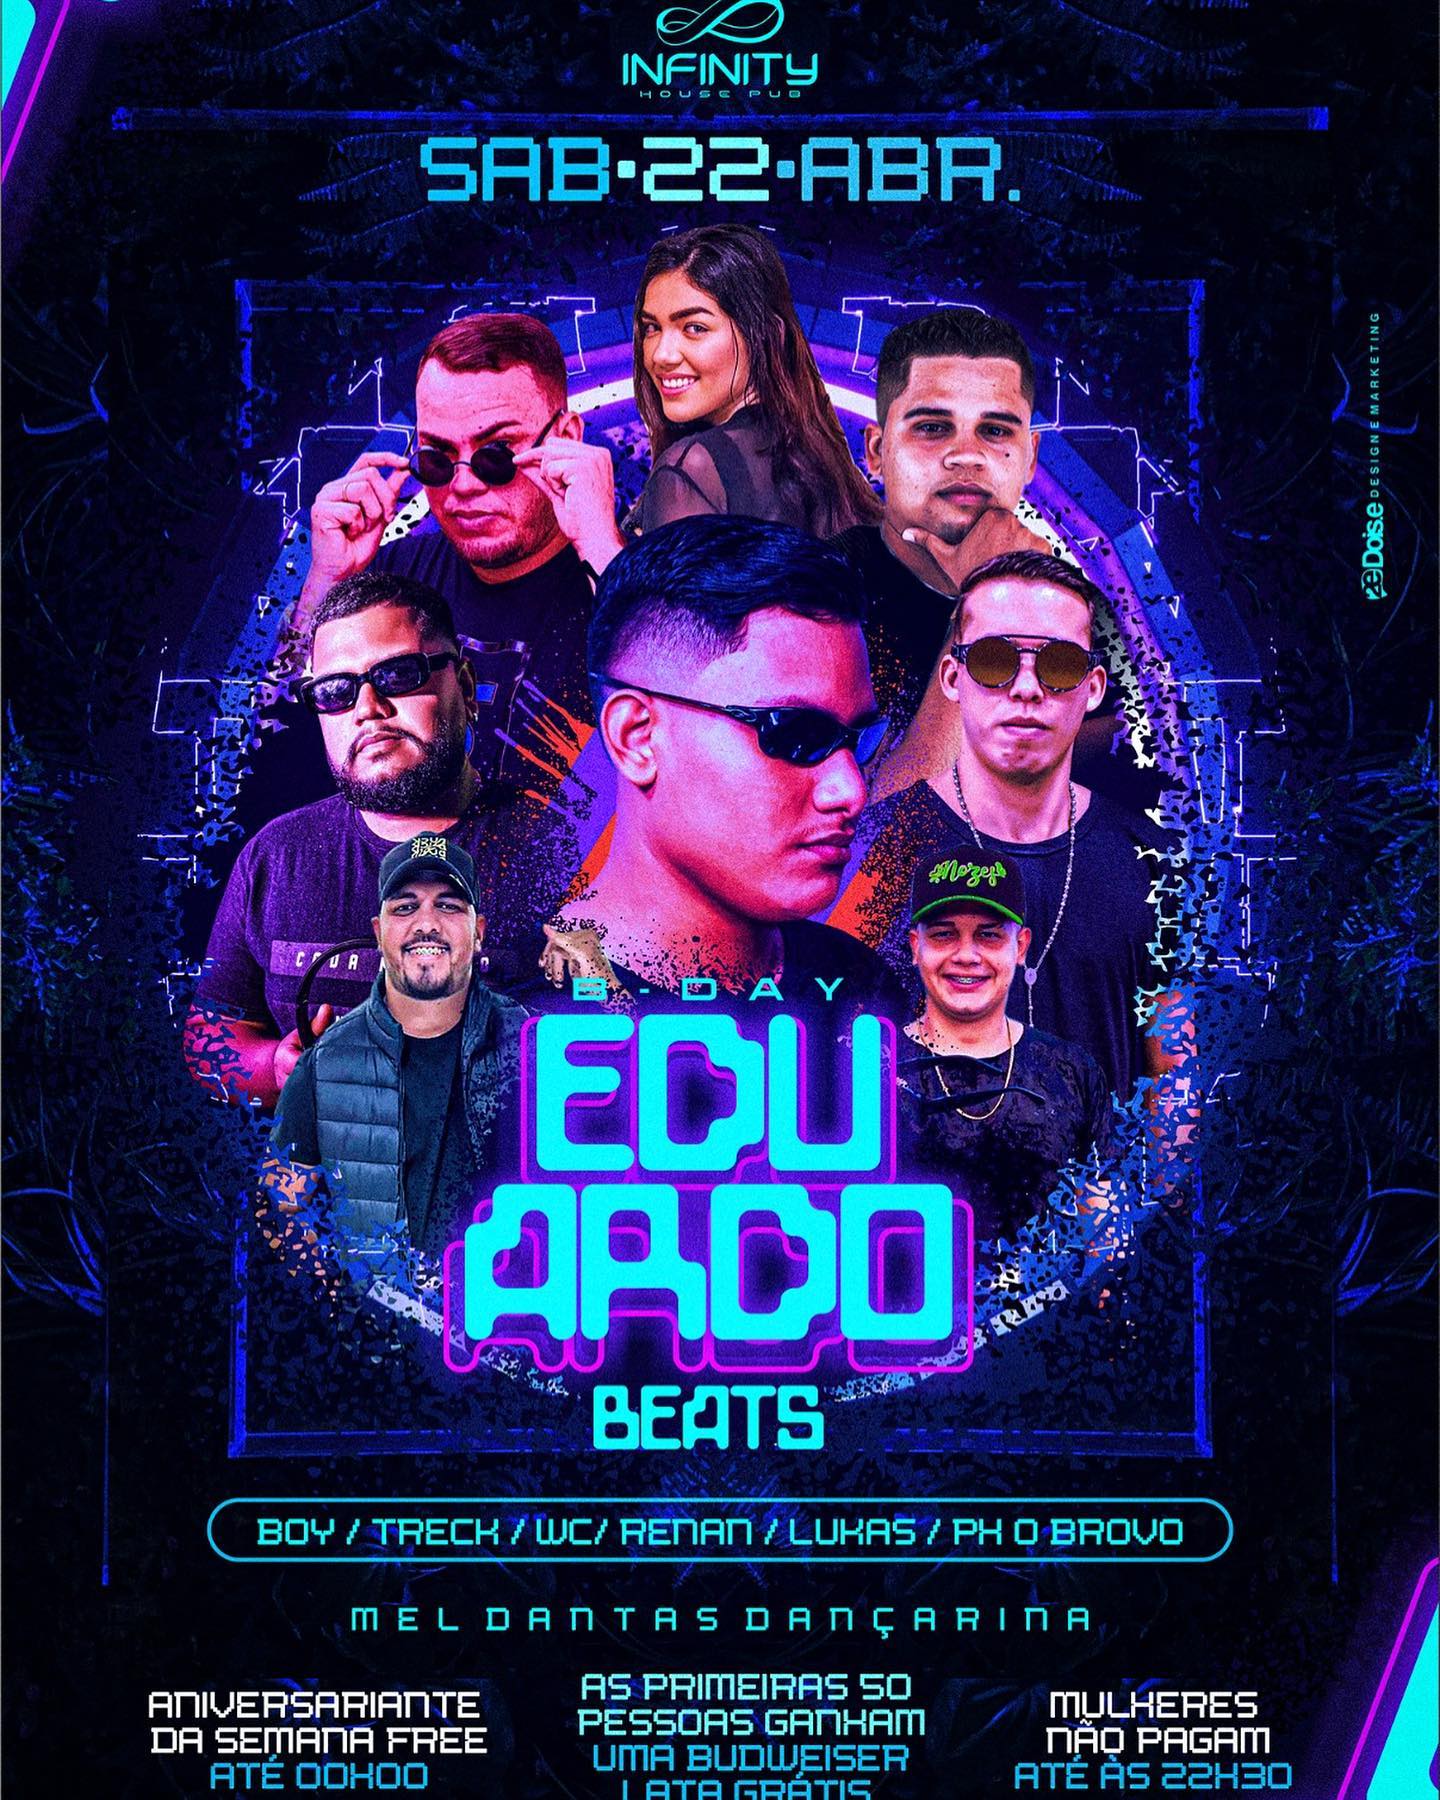 BDAY DO DJ EDUARDO BEATS